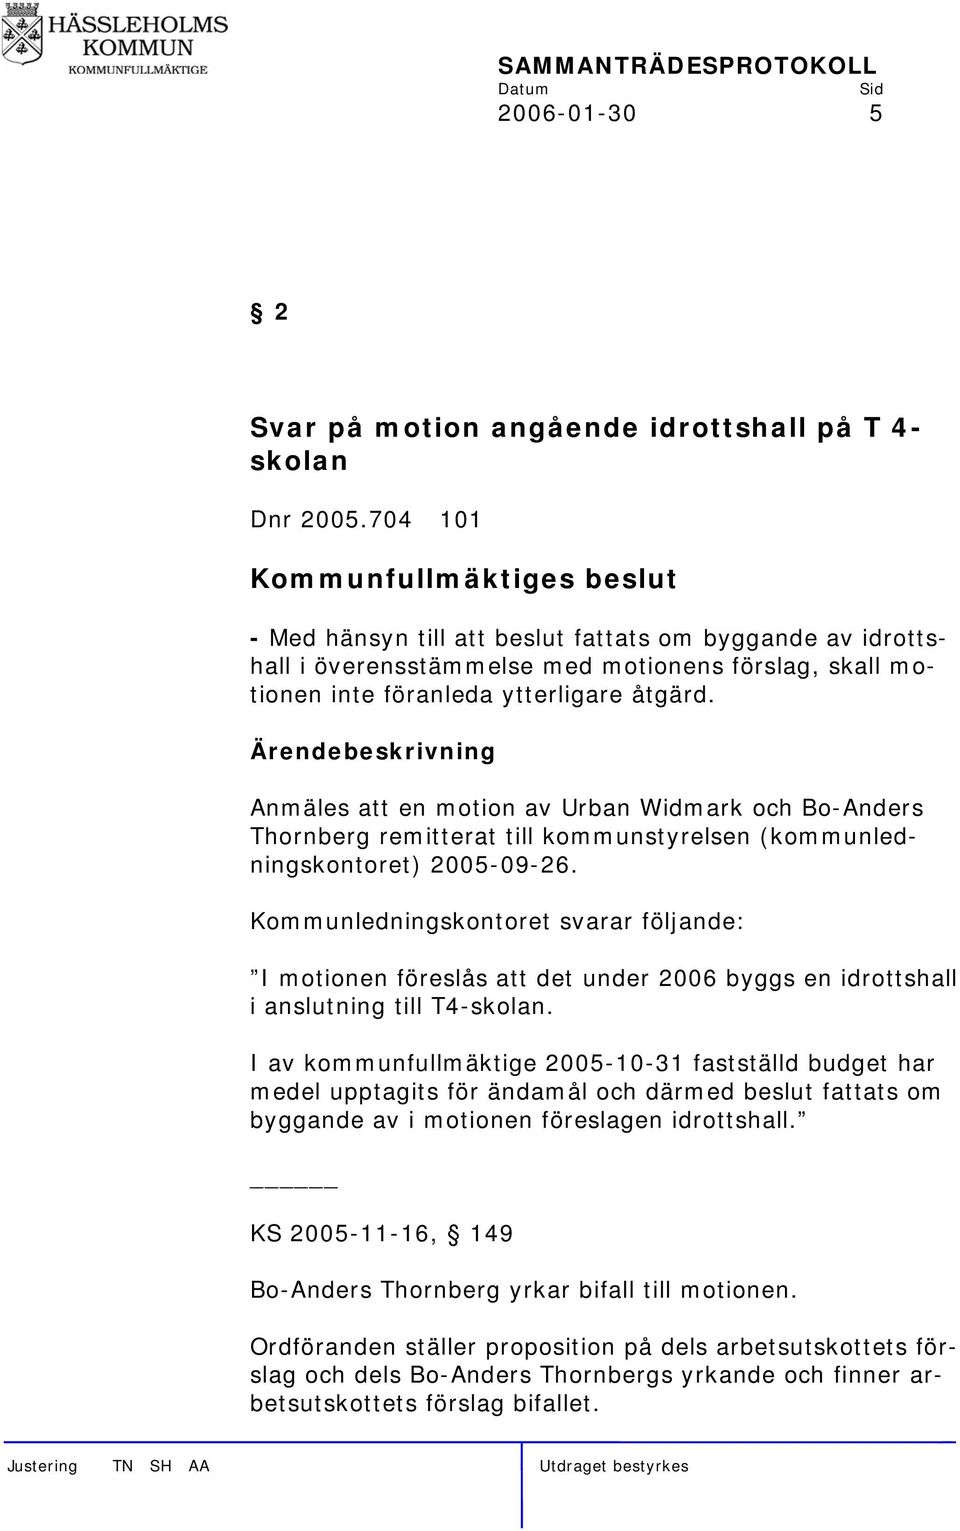 Anmäles att en motion av Urban Widmark och Bo-Anders Thornberg remitterat till kommunstyrelsen (kommunledningskontoret) 2005-09-26.